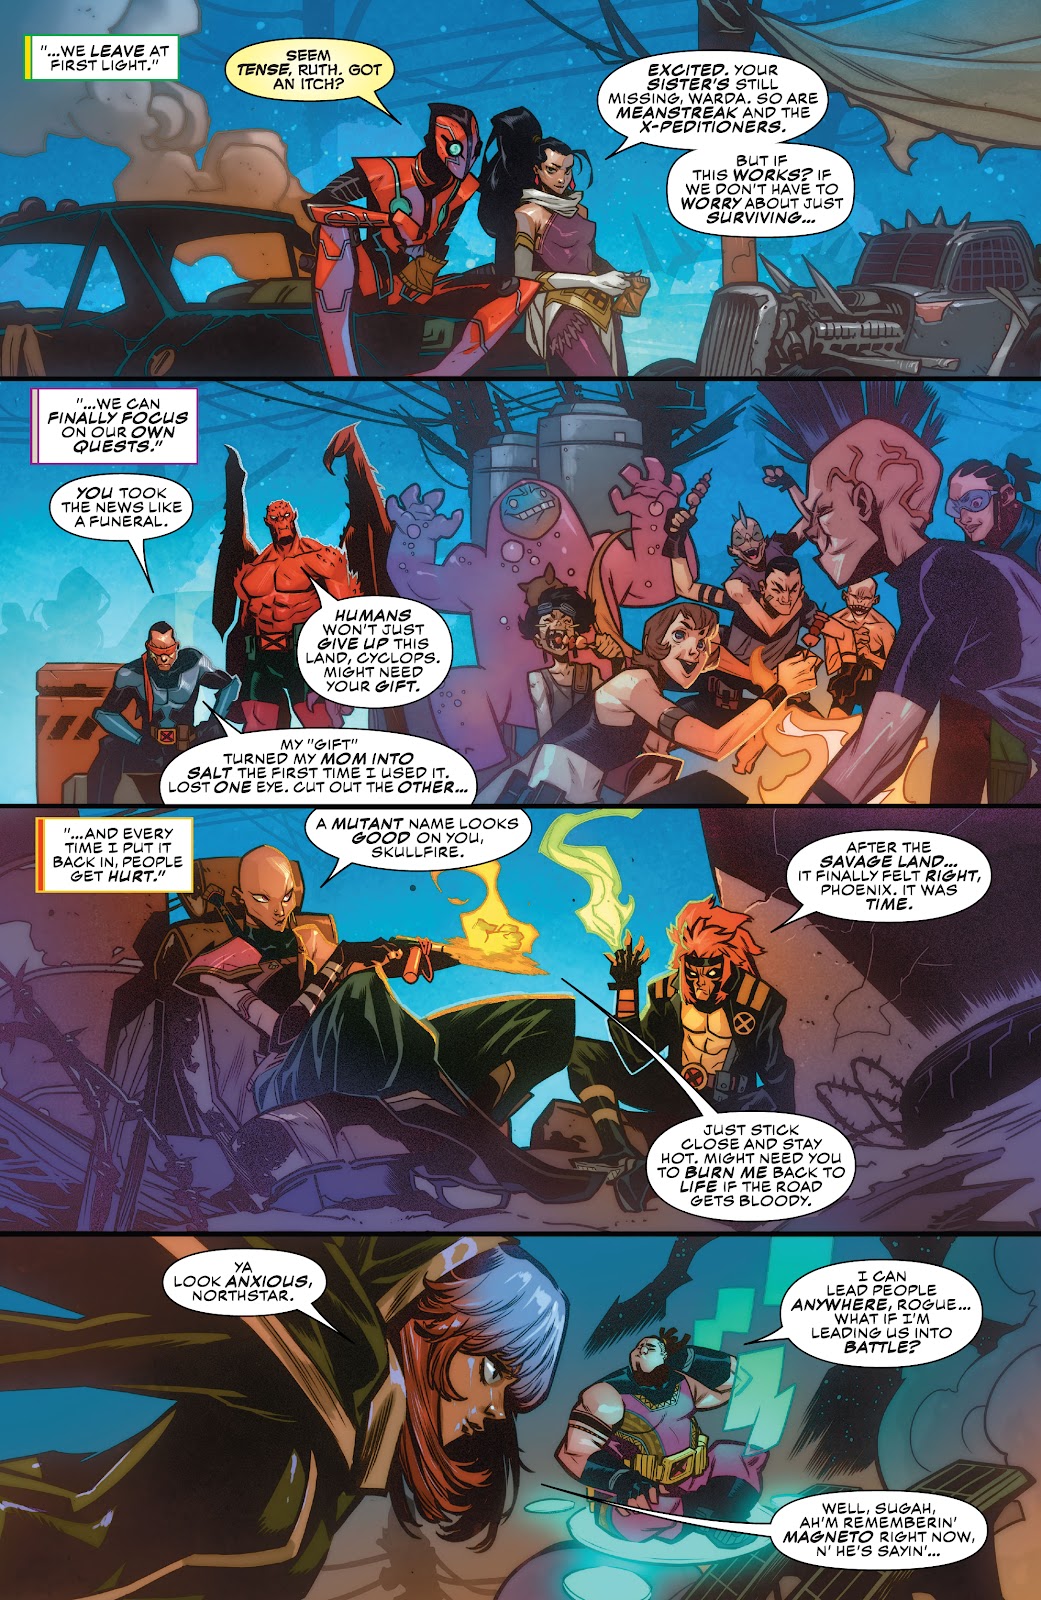 Spider-Man 2099: Exodus Alpha issue 5 - Page 9